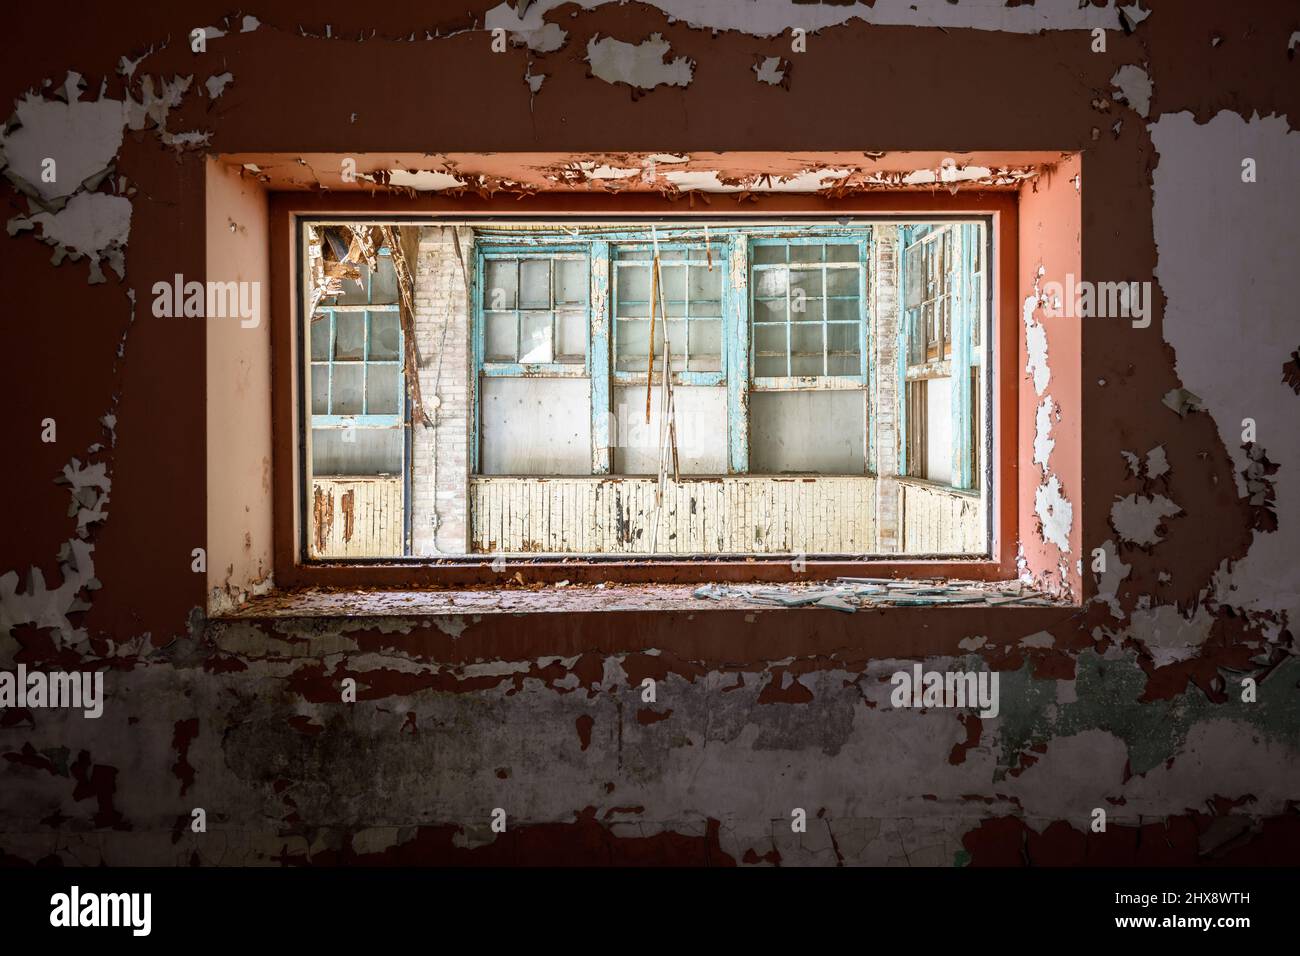 Mirando las ventanas viejas a través de un marco de ventana con pintura descascarada. Foto de stock